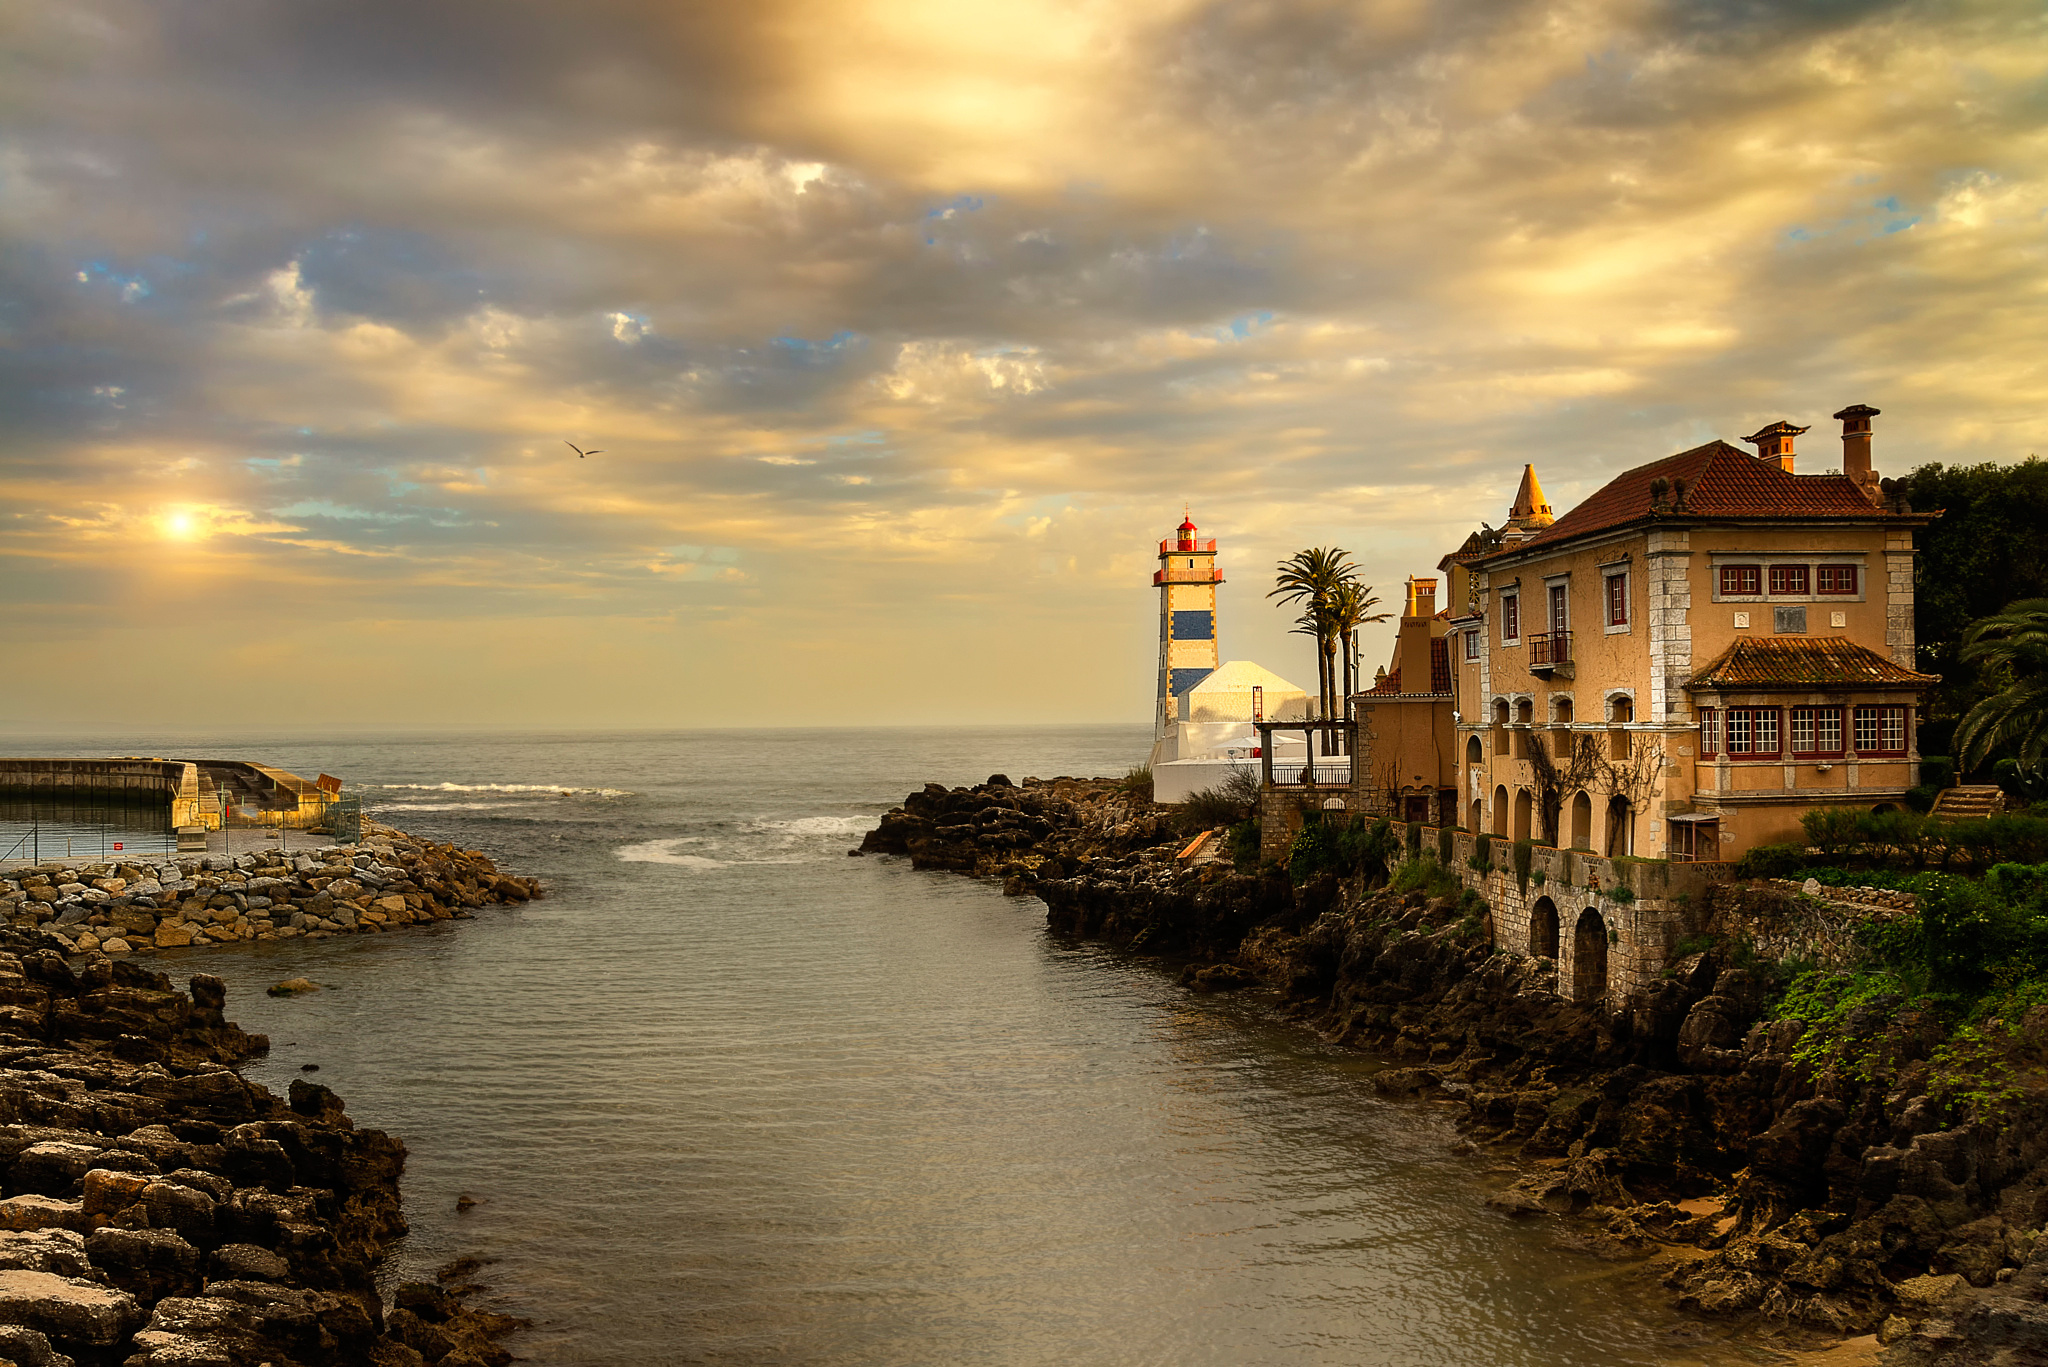 Скачать обои Santa Marta Lighthouse Museum на телефон бесплатно